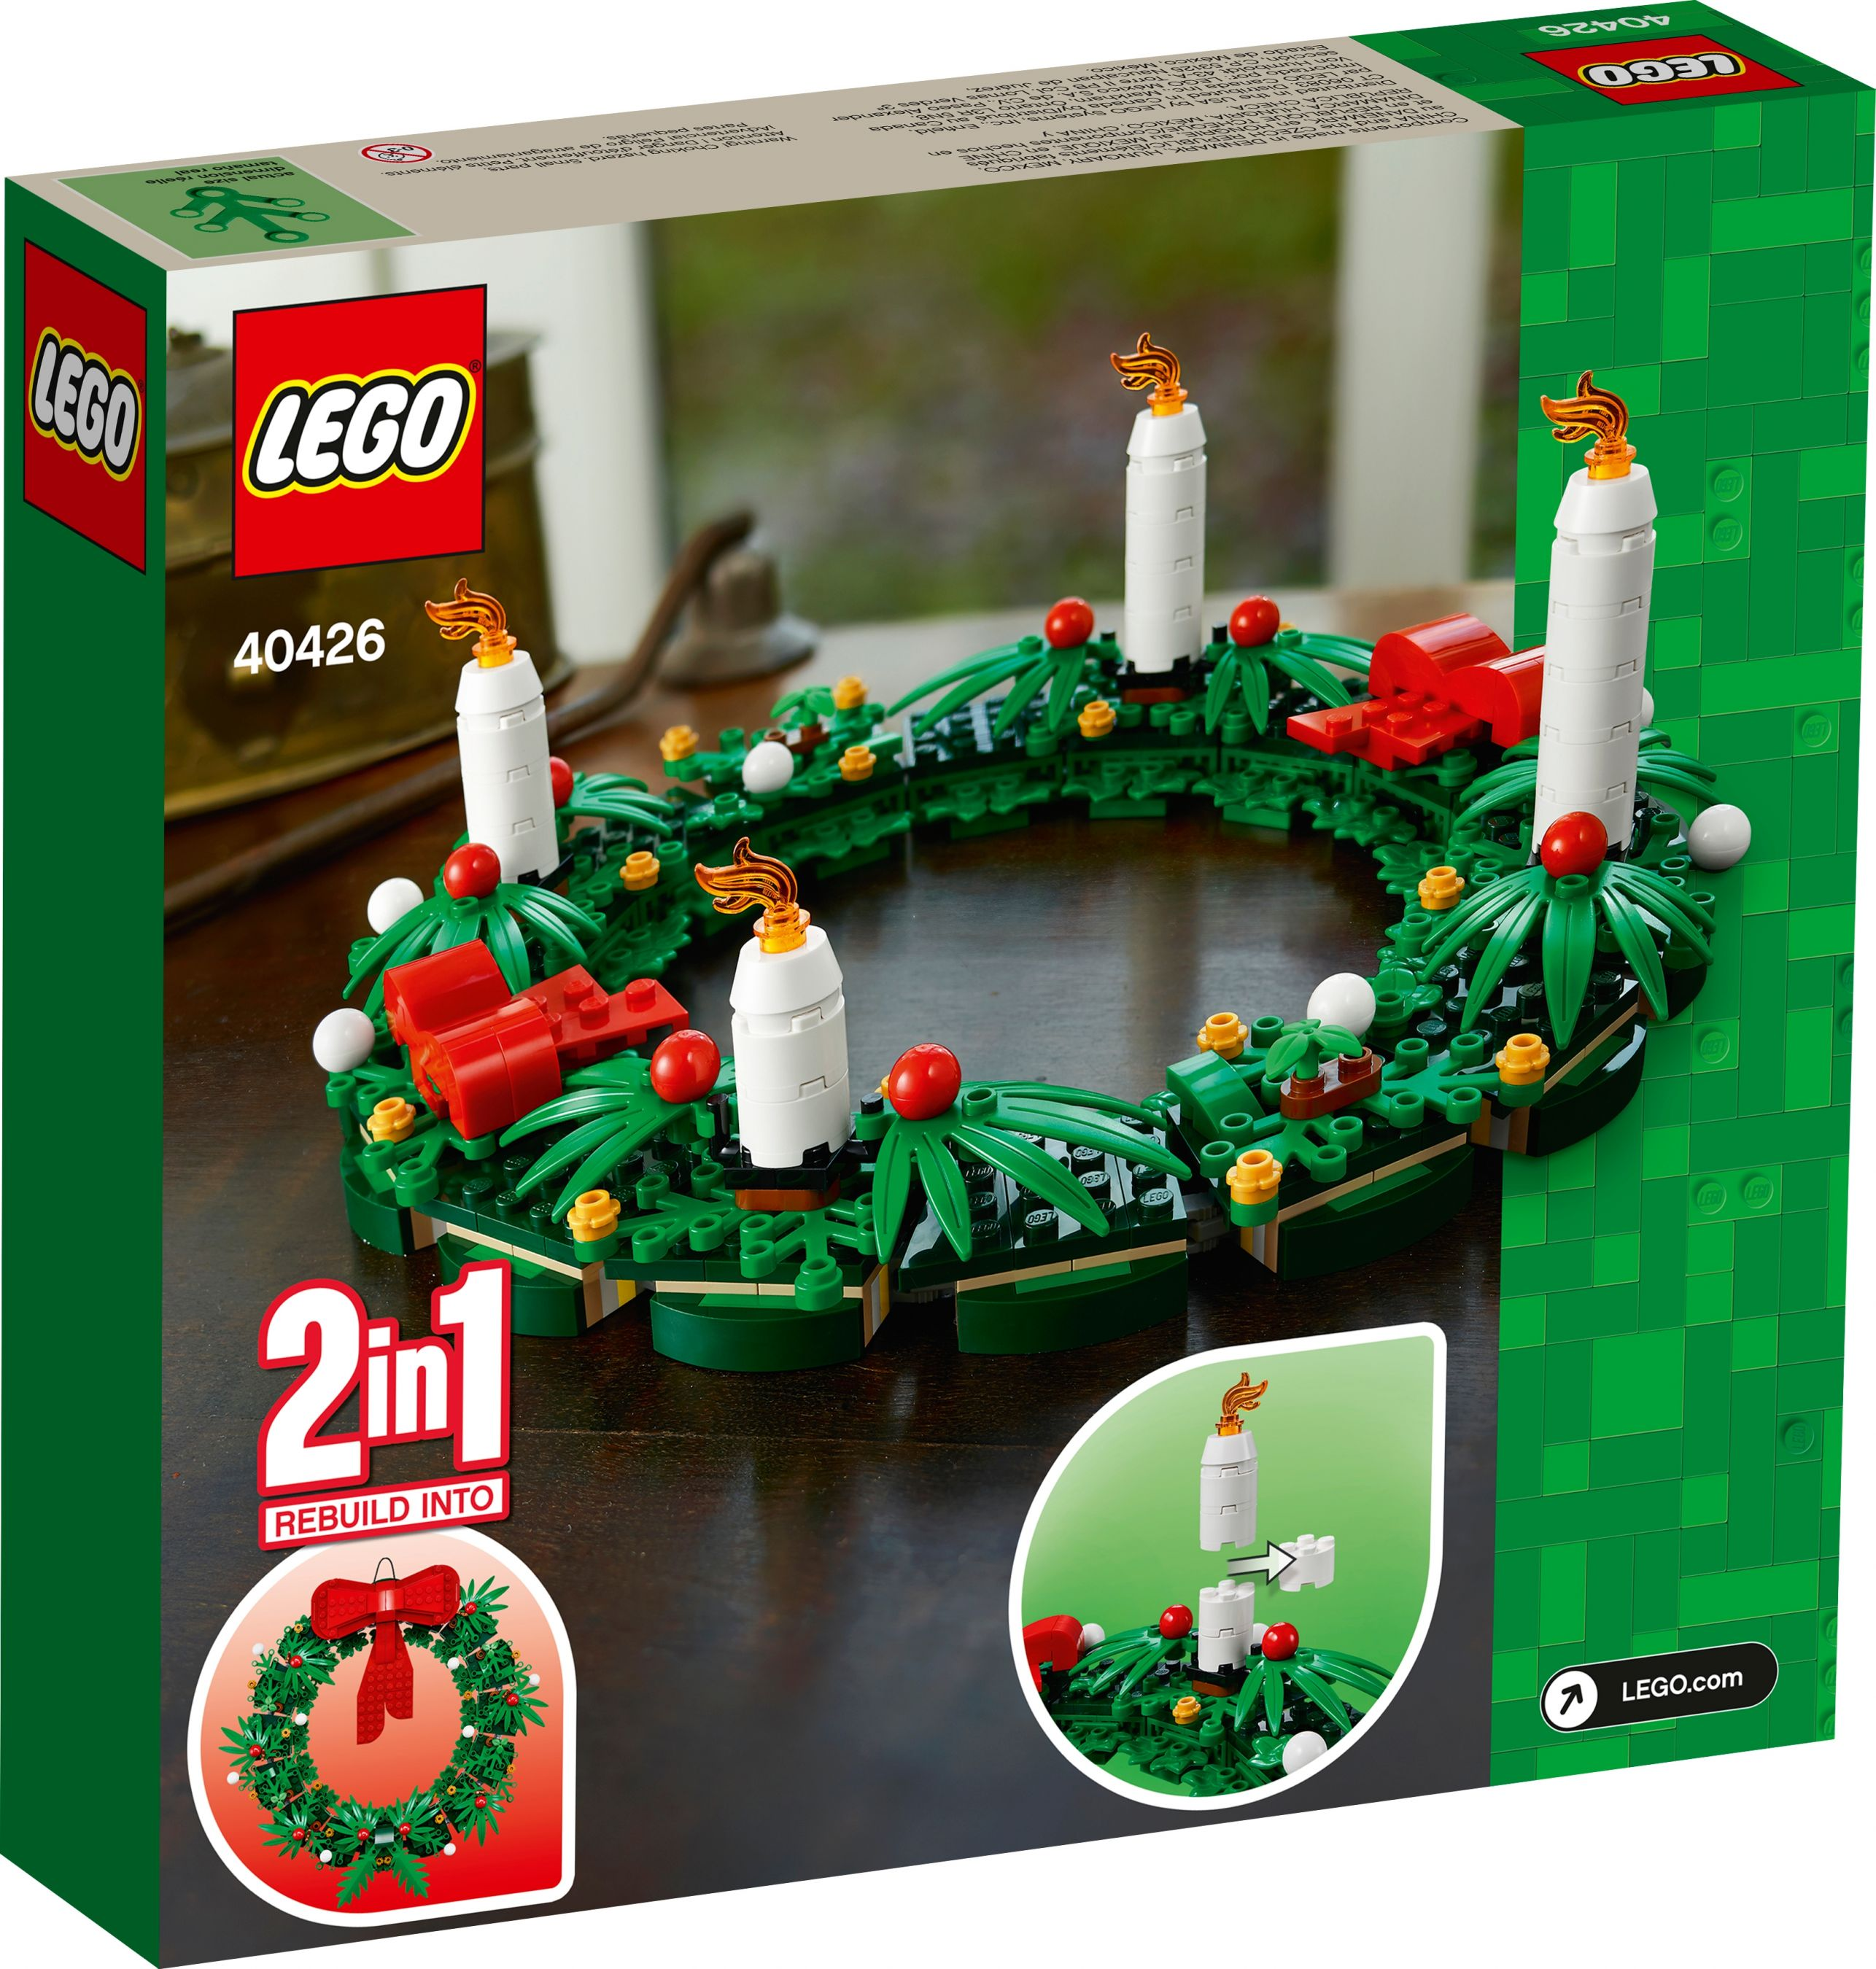 / Türkranz Bausatz 2in1 LEGO Adventskranz 40426